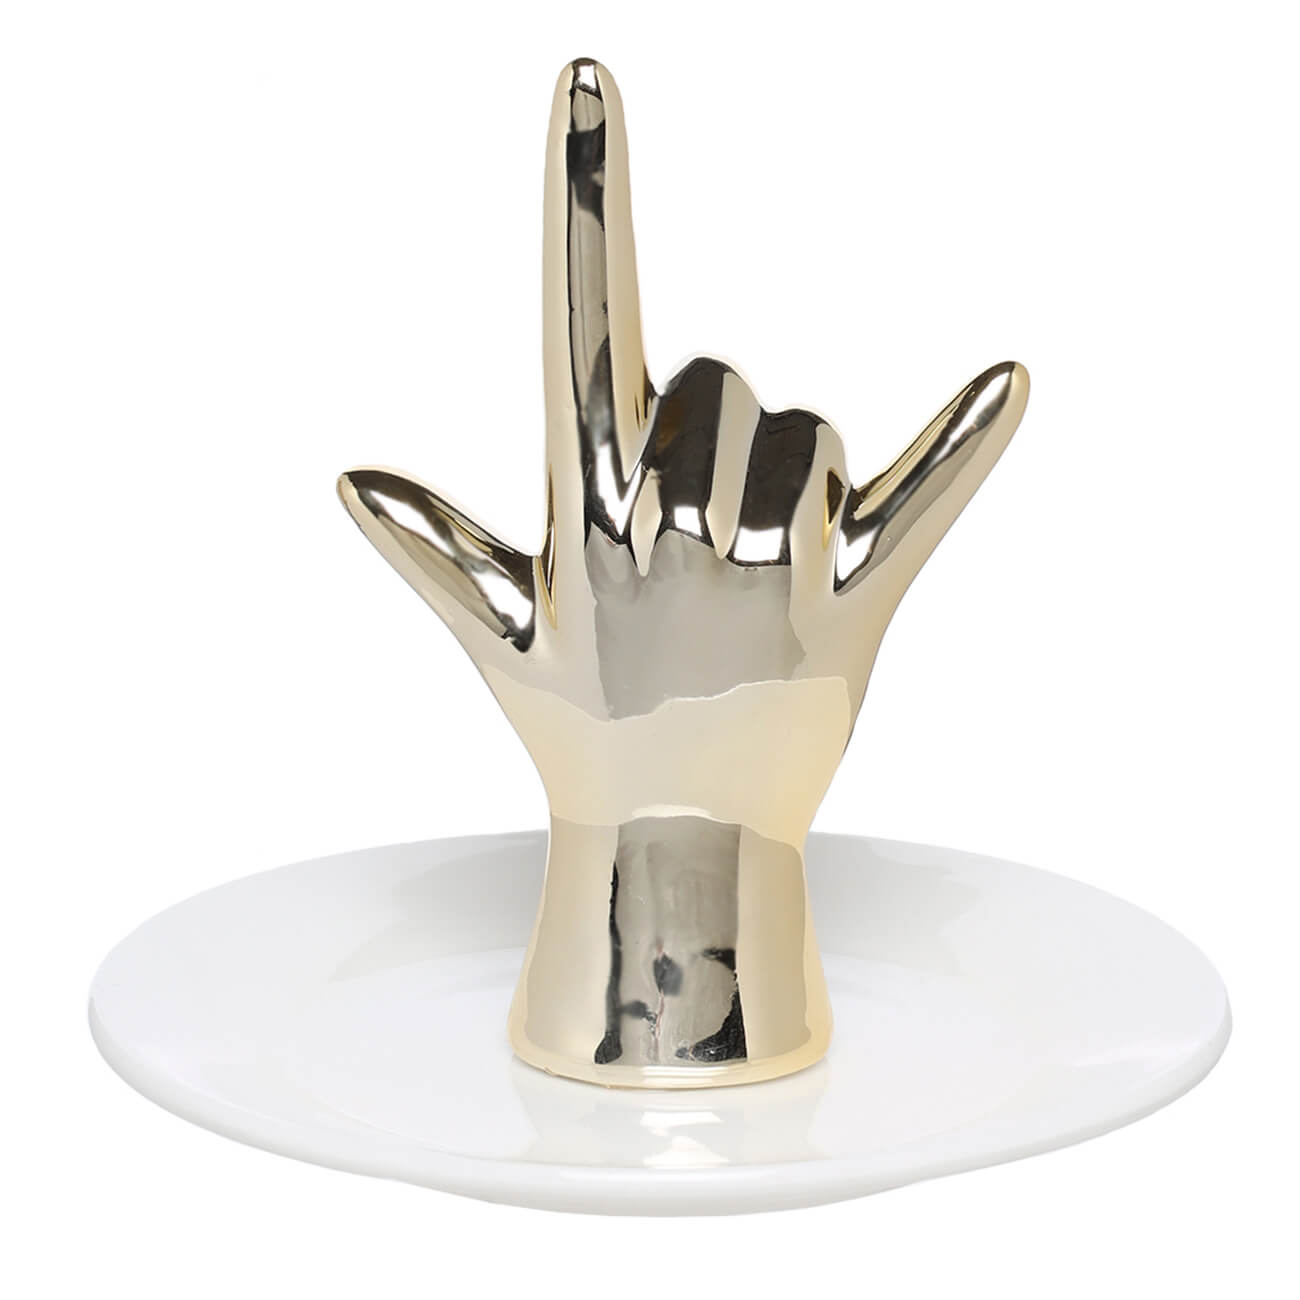 Держатель для украшений, 11 см, керамика/металл, бело-золотистый, Рука, Hand держатель туалетной бумаги grohe